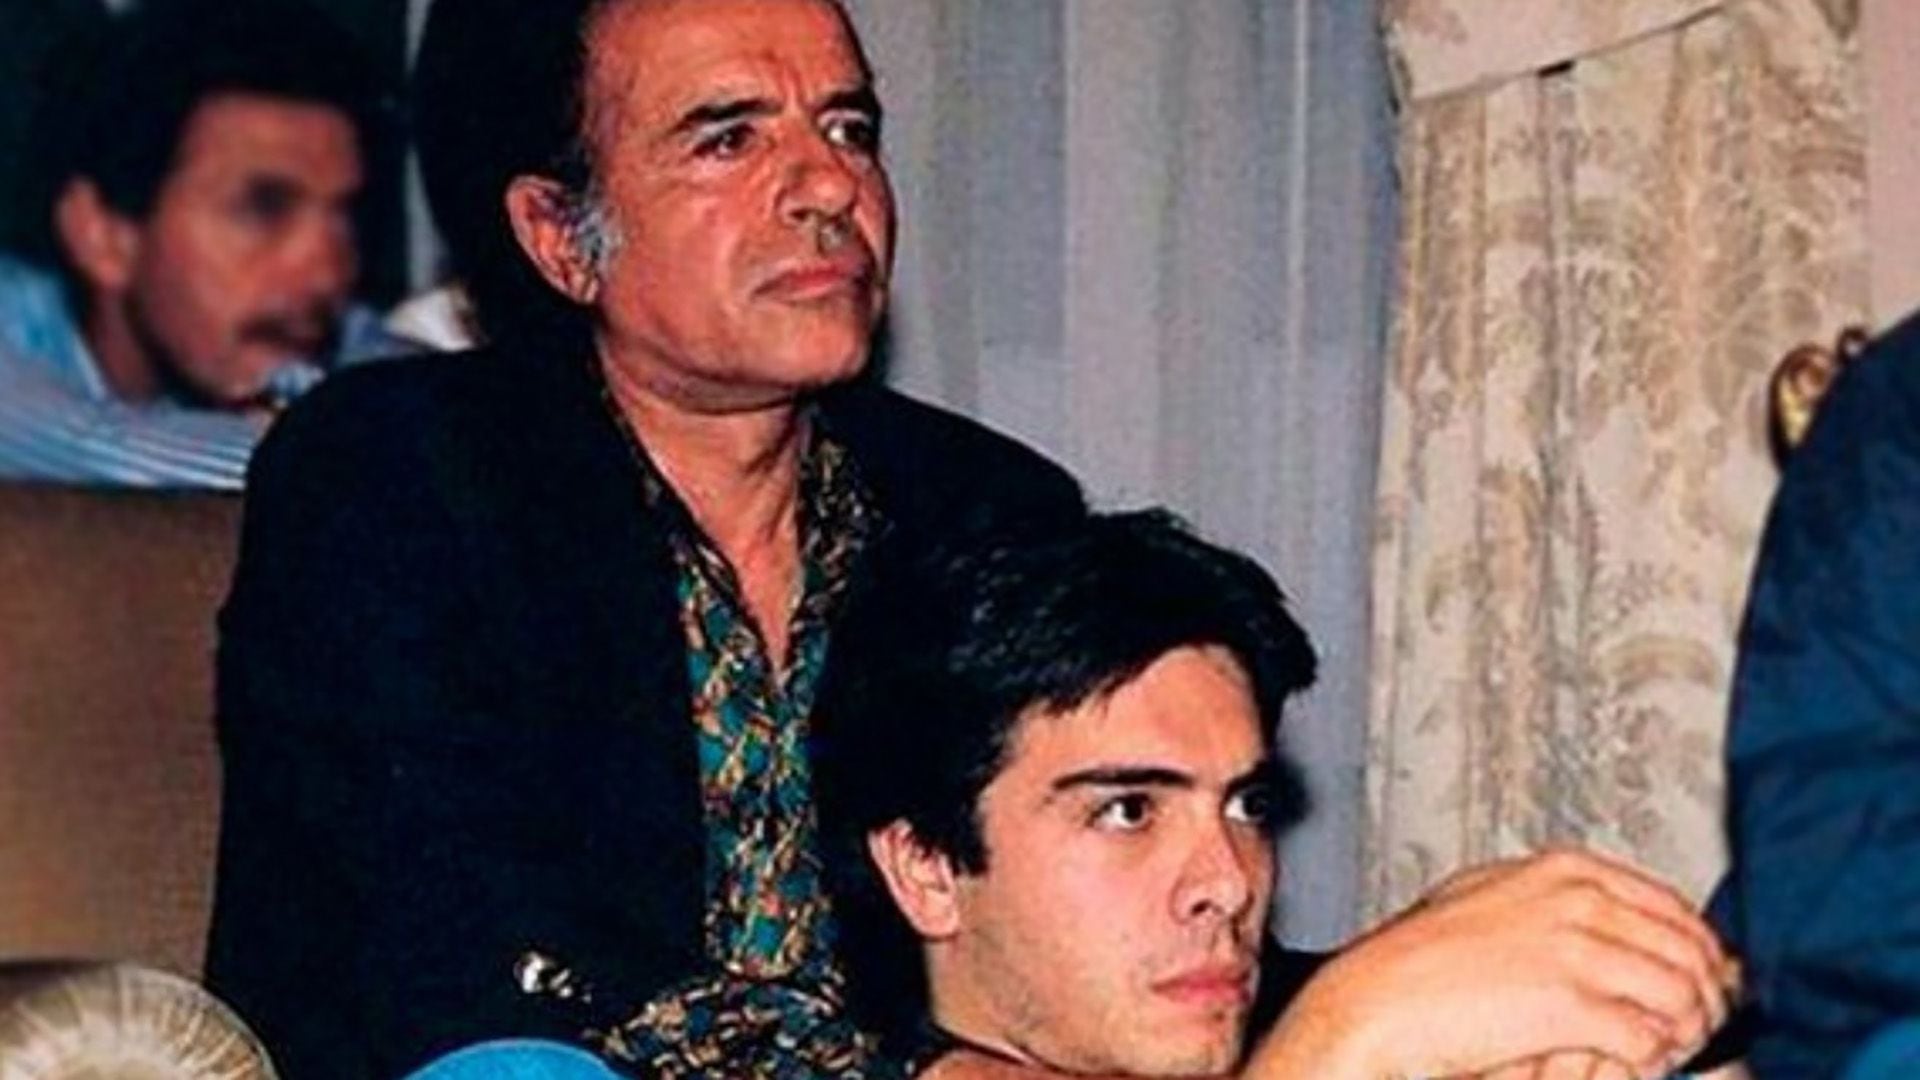 El 15 de marzo de 1995, dos meses antes de los comicios presidenciales, su hijo Carlos Menem Junior murió a los 28 años al desplomarse su helicóptero en la provincia de Buenos Aires. Su mujer sostuvo de entrada que había sido víctima de un atentado.